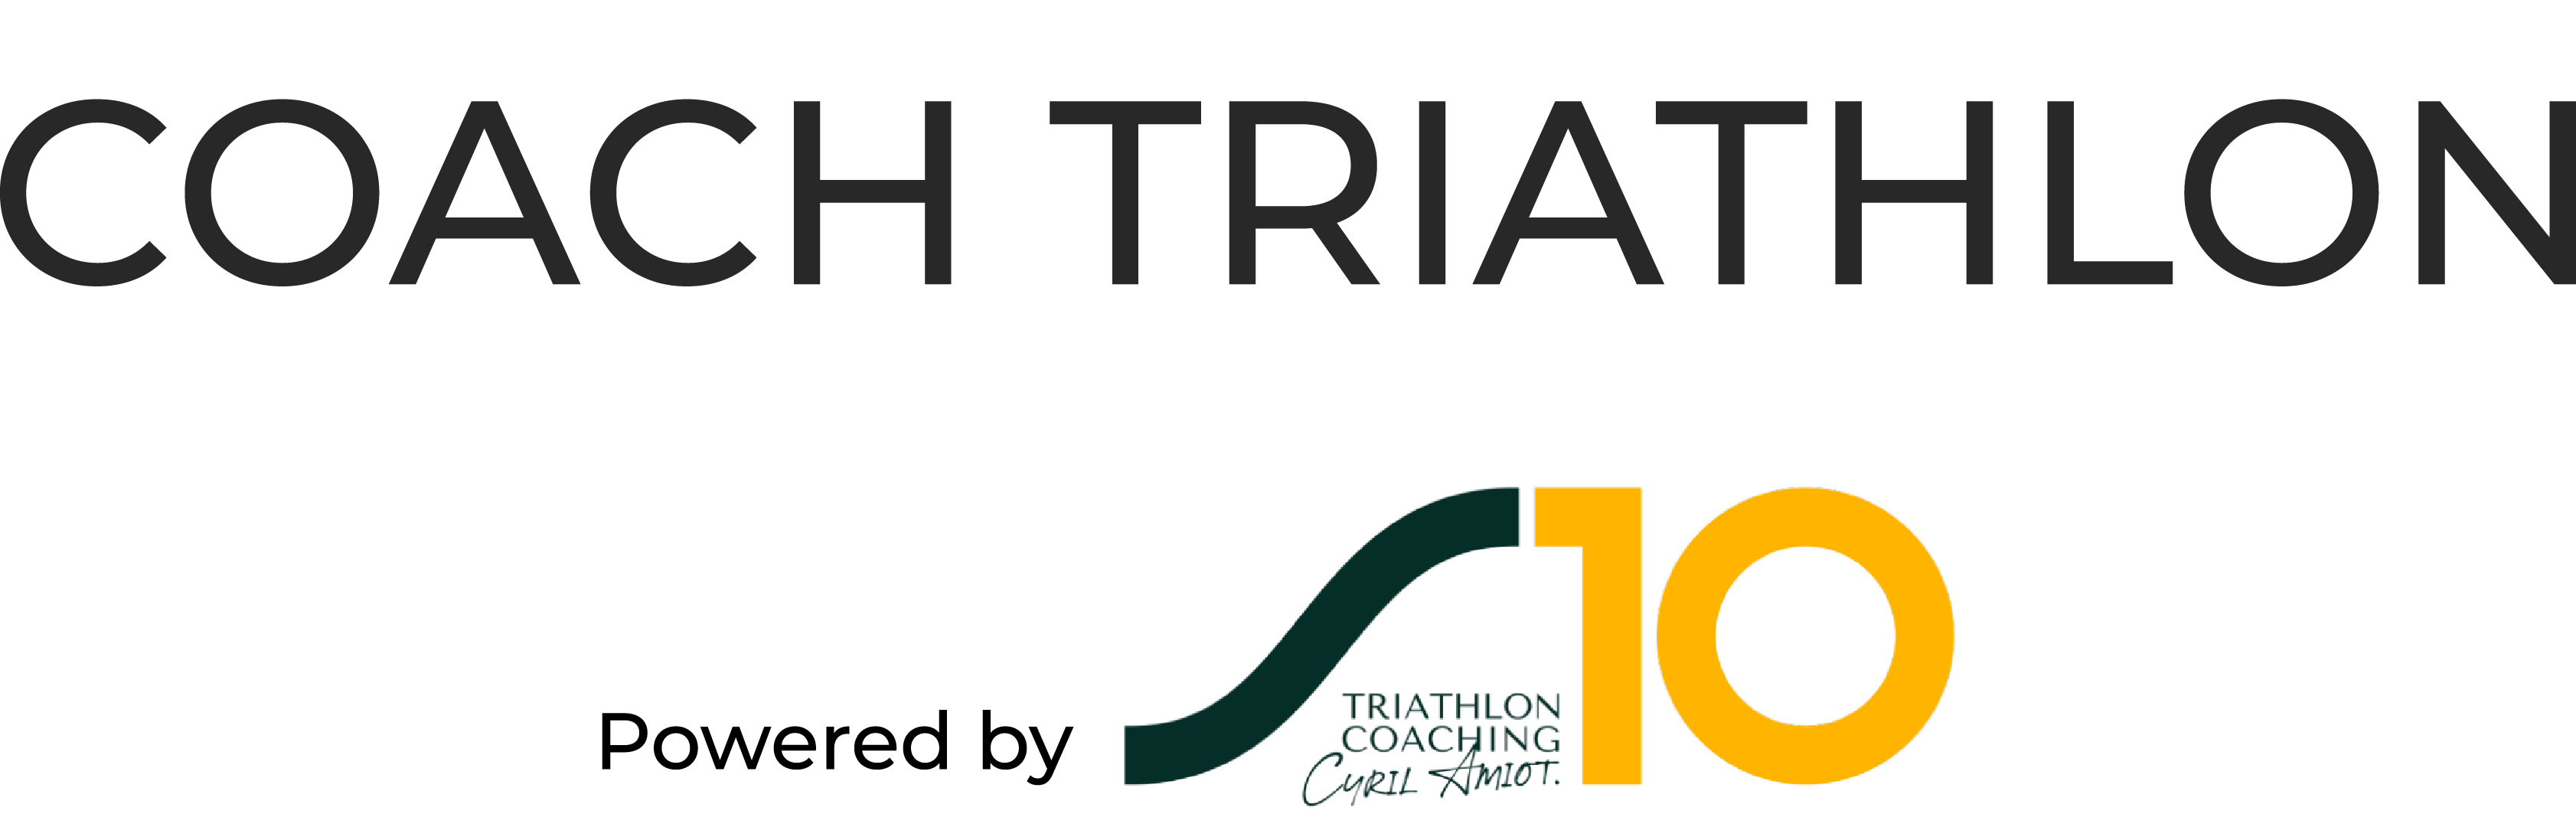 Coach Triathlon